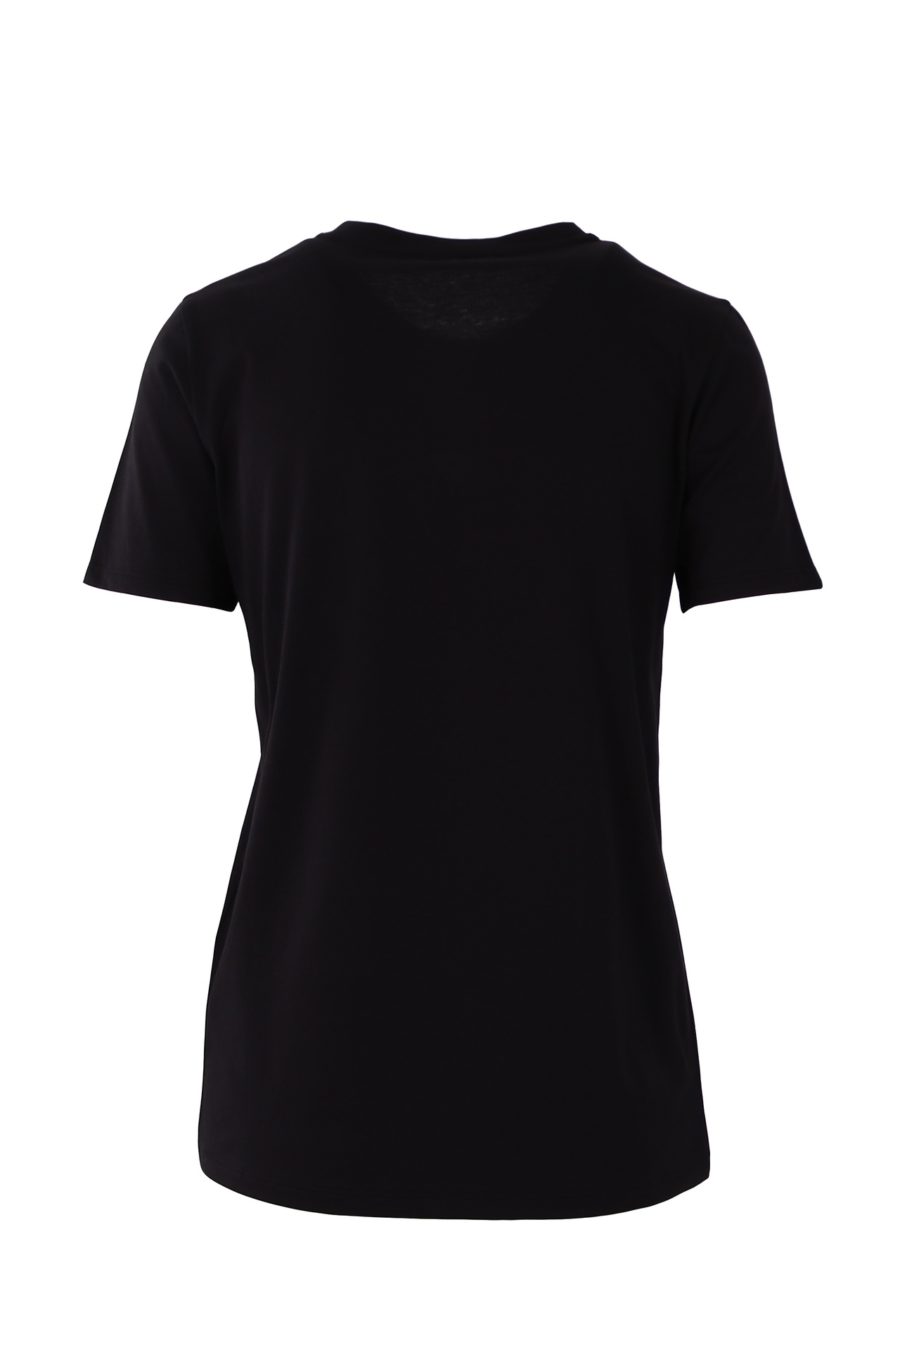 Camiseta Balmain negra con logotipo estampado - 4e0d0dedfe97aed6beceedeed5fb22af1bc603cc